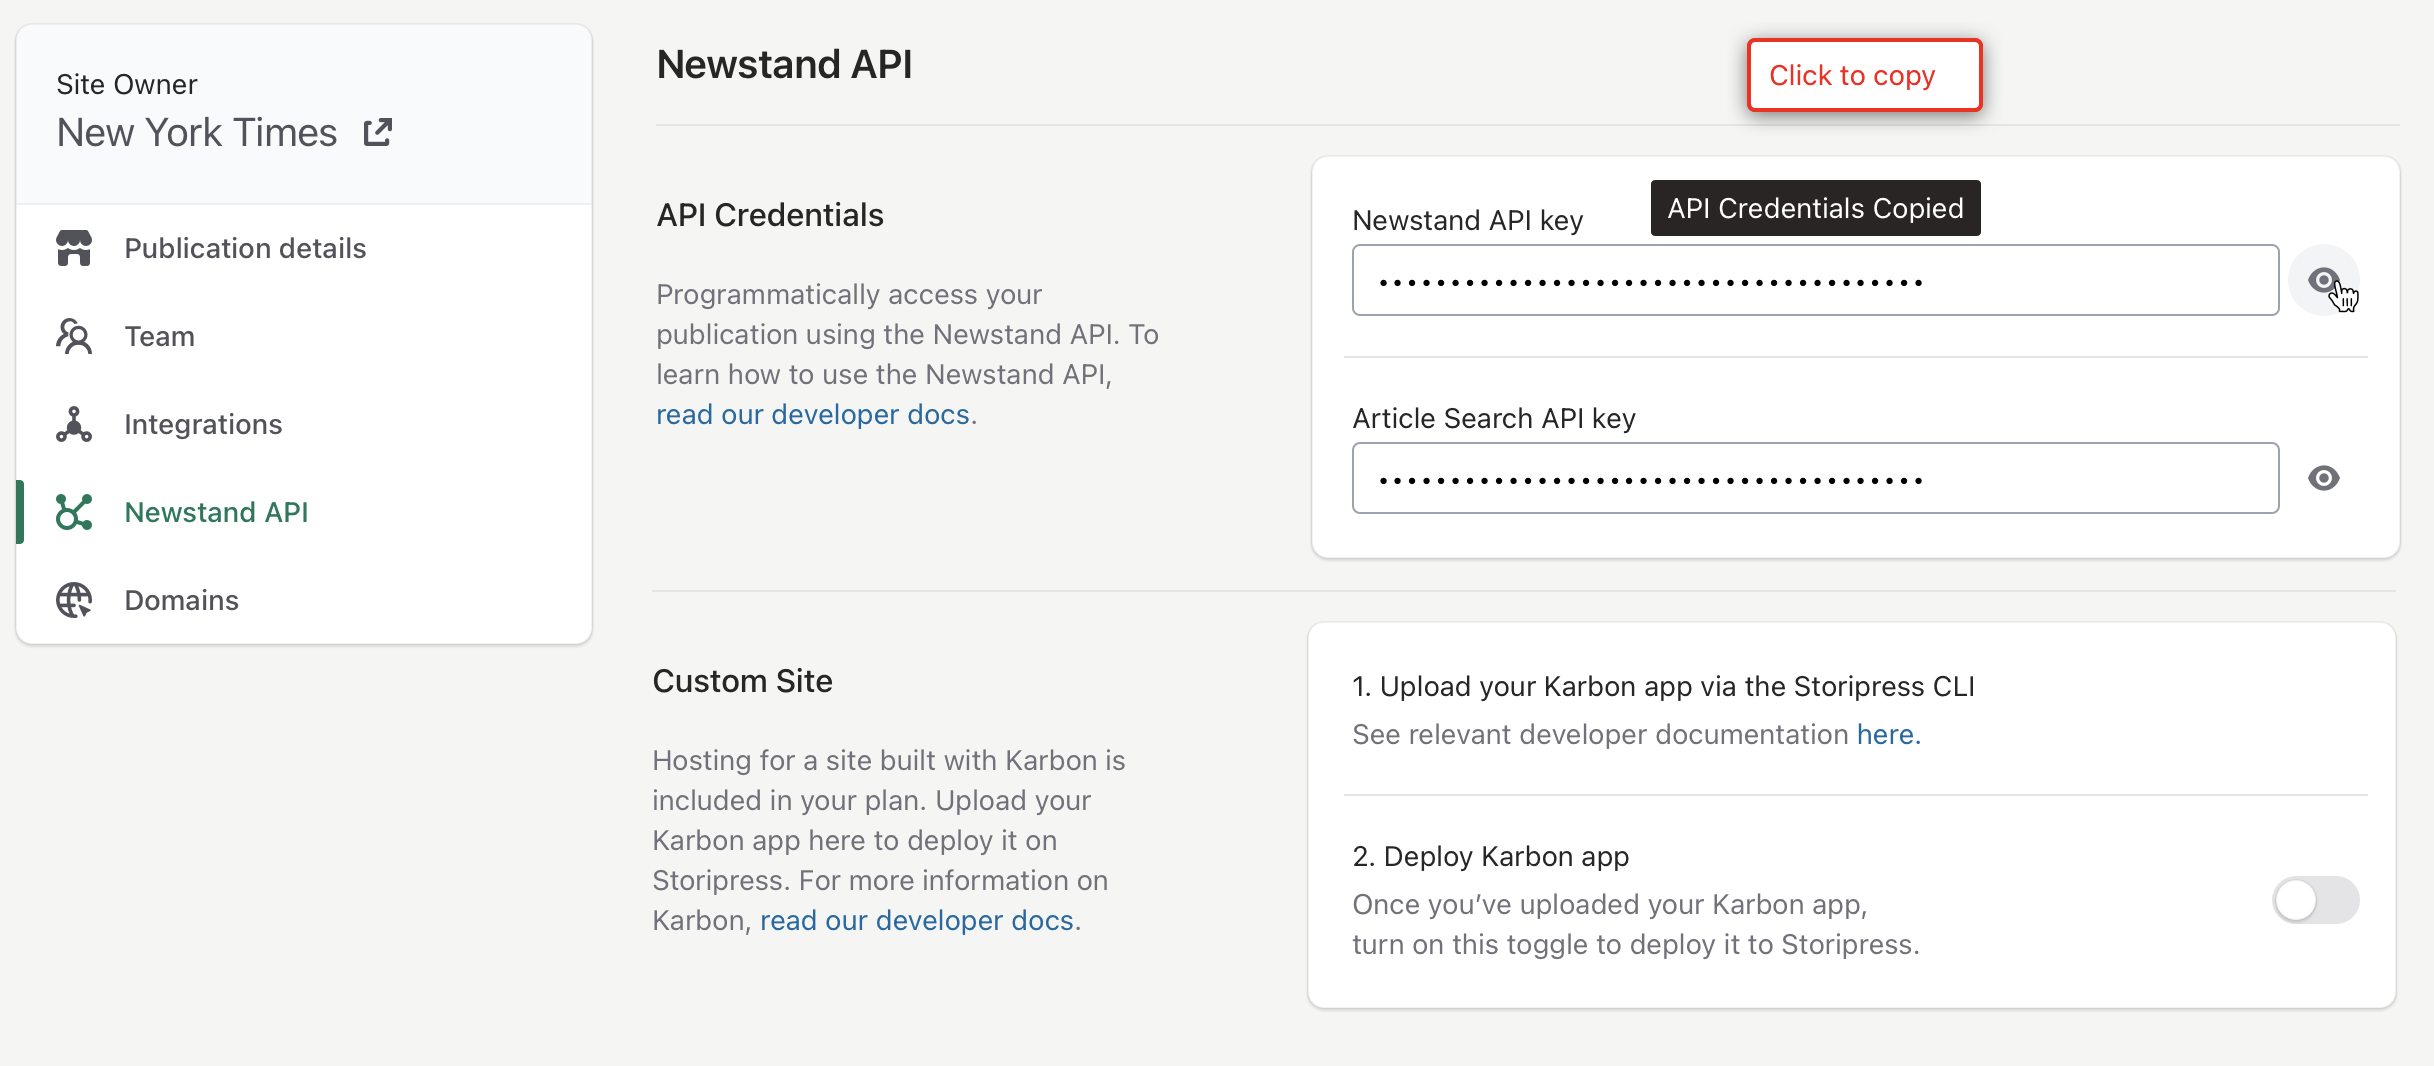 Newstand API